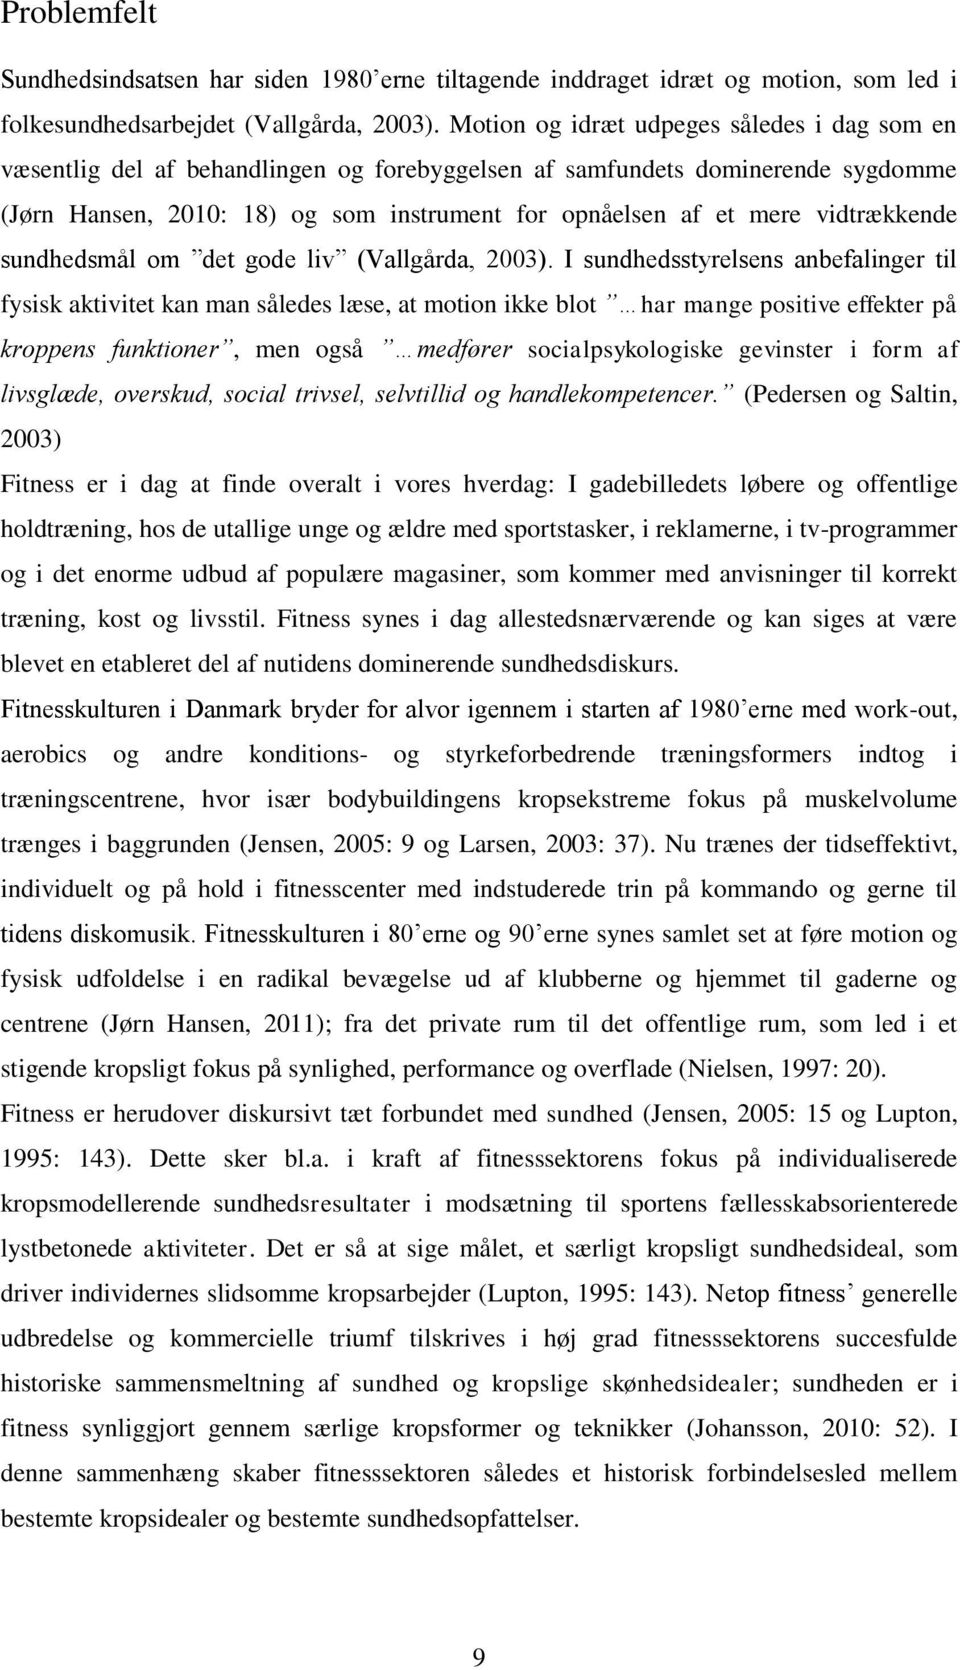 vidtrækkende sundhedsmål om det gode liv (Vallgårda, 2003).